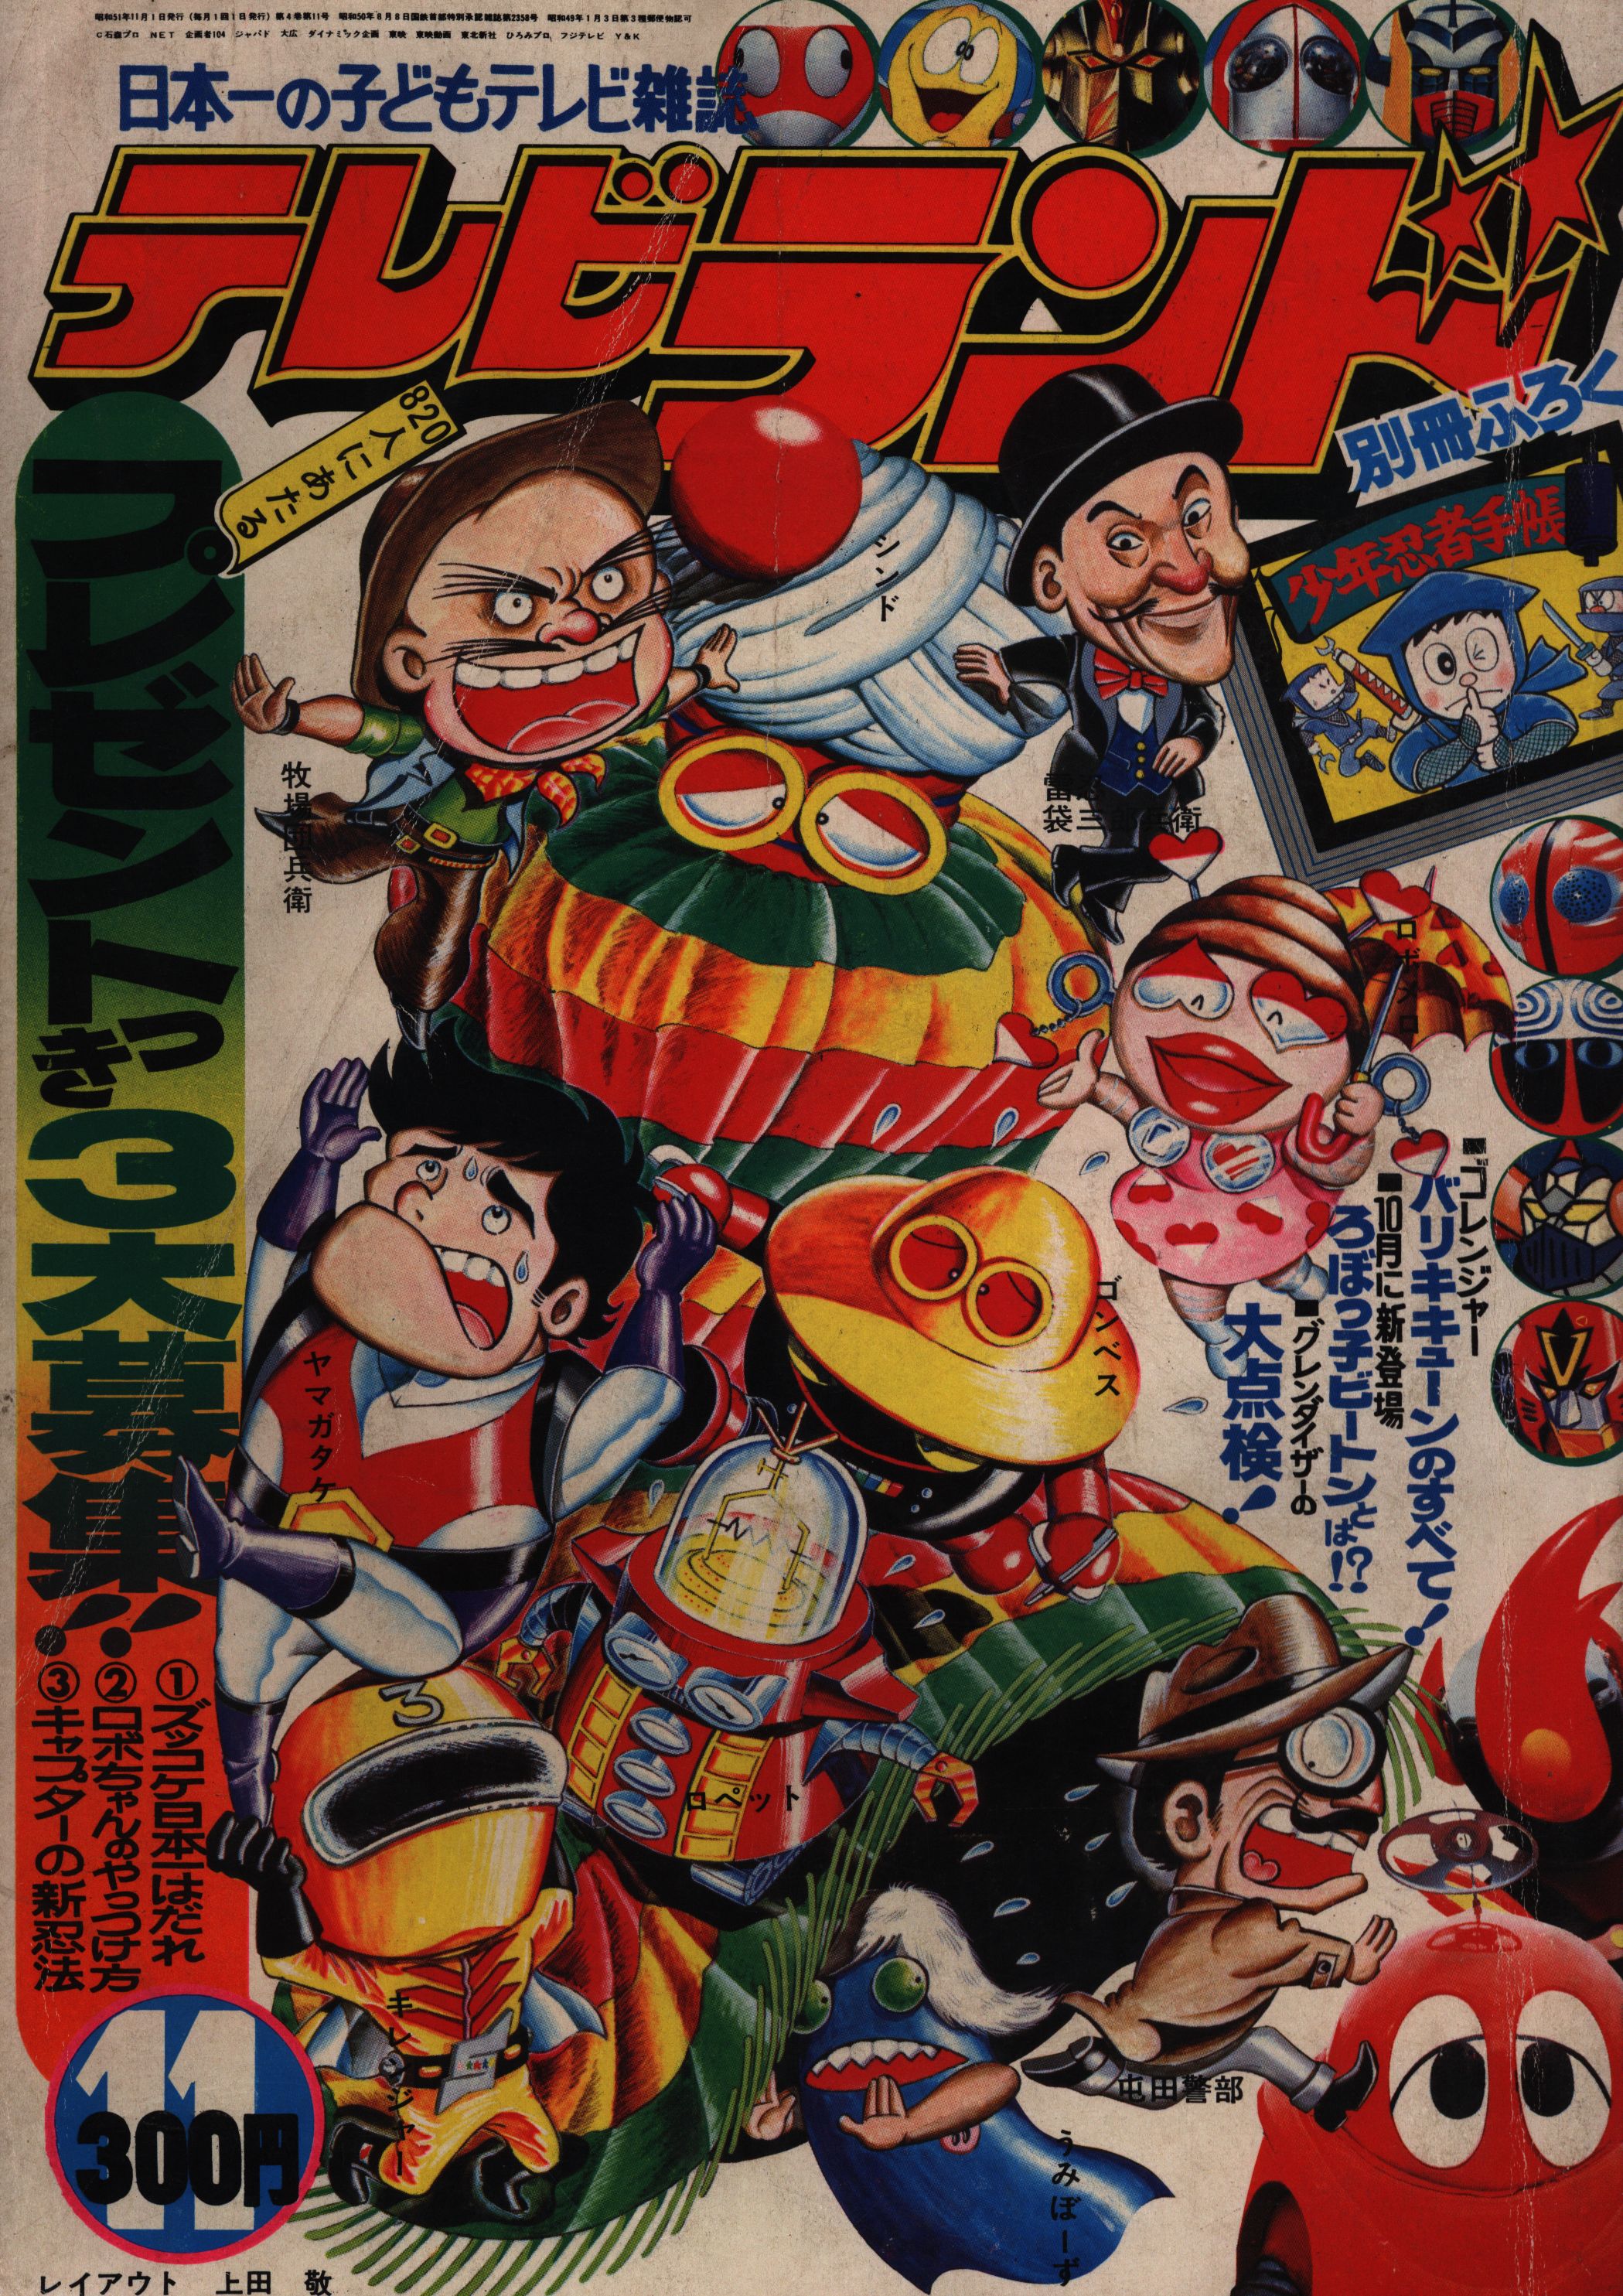 徳間書店 1976年(昭和51年)の漫画雑誌 本誌のみ テレビランド 1976年 